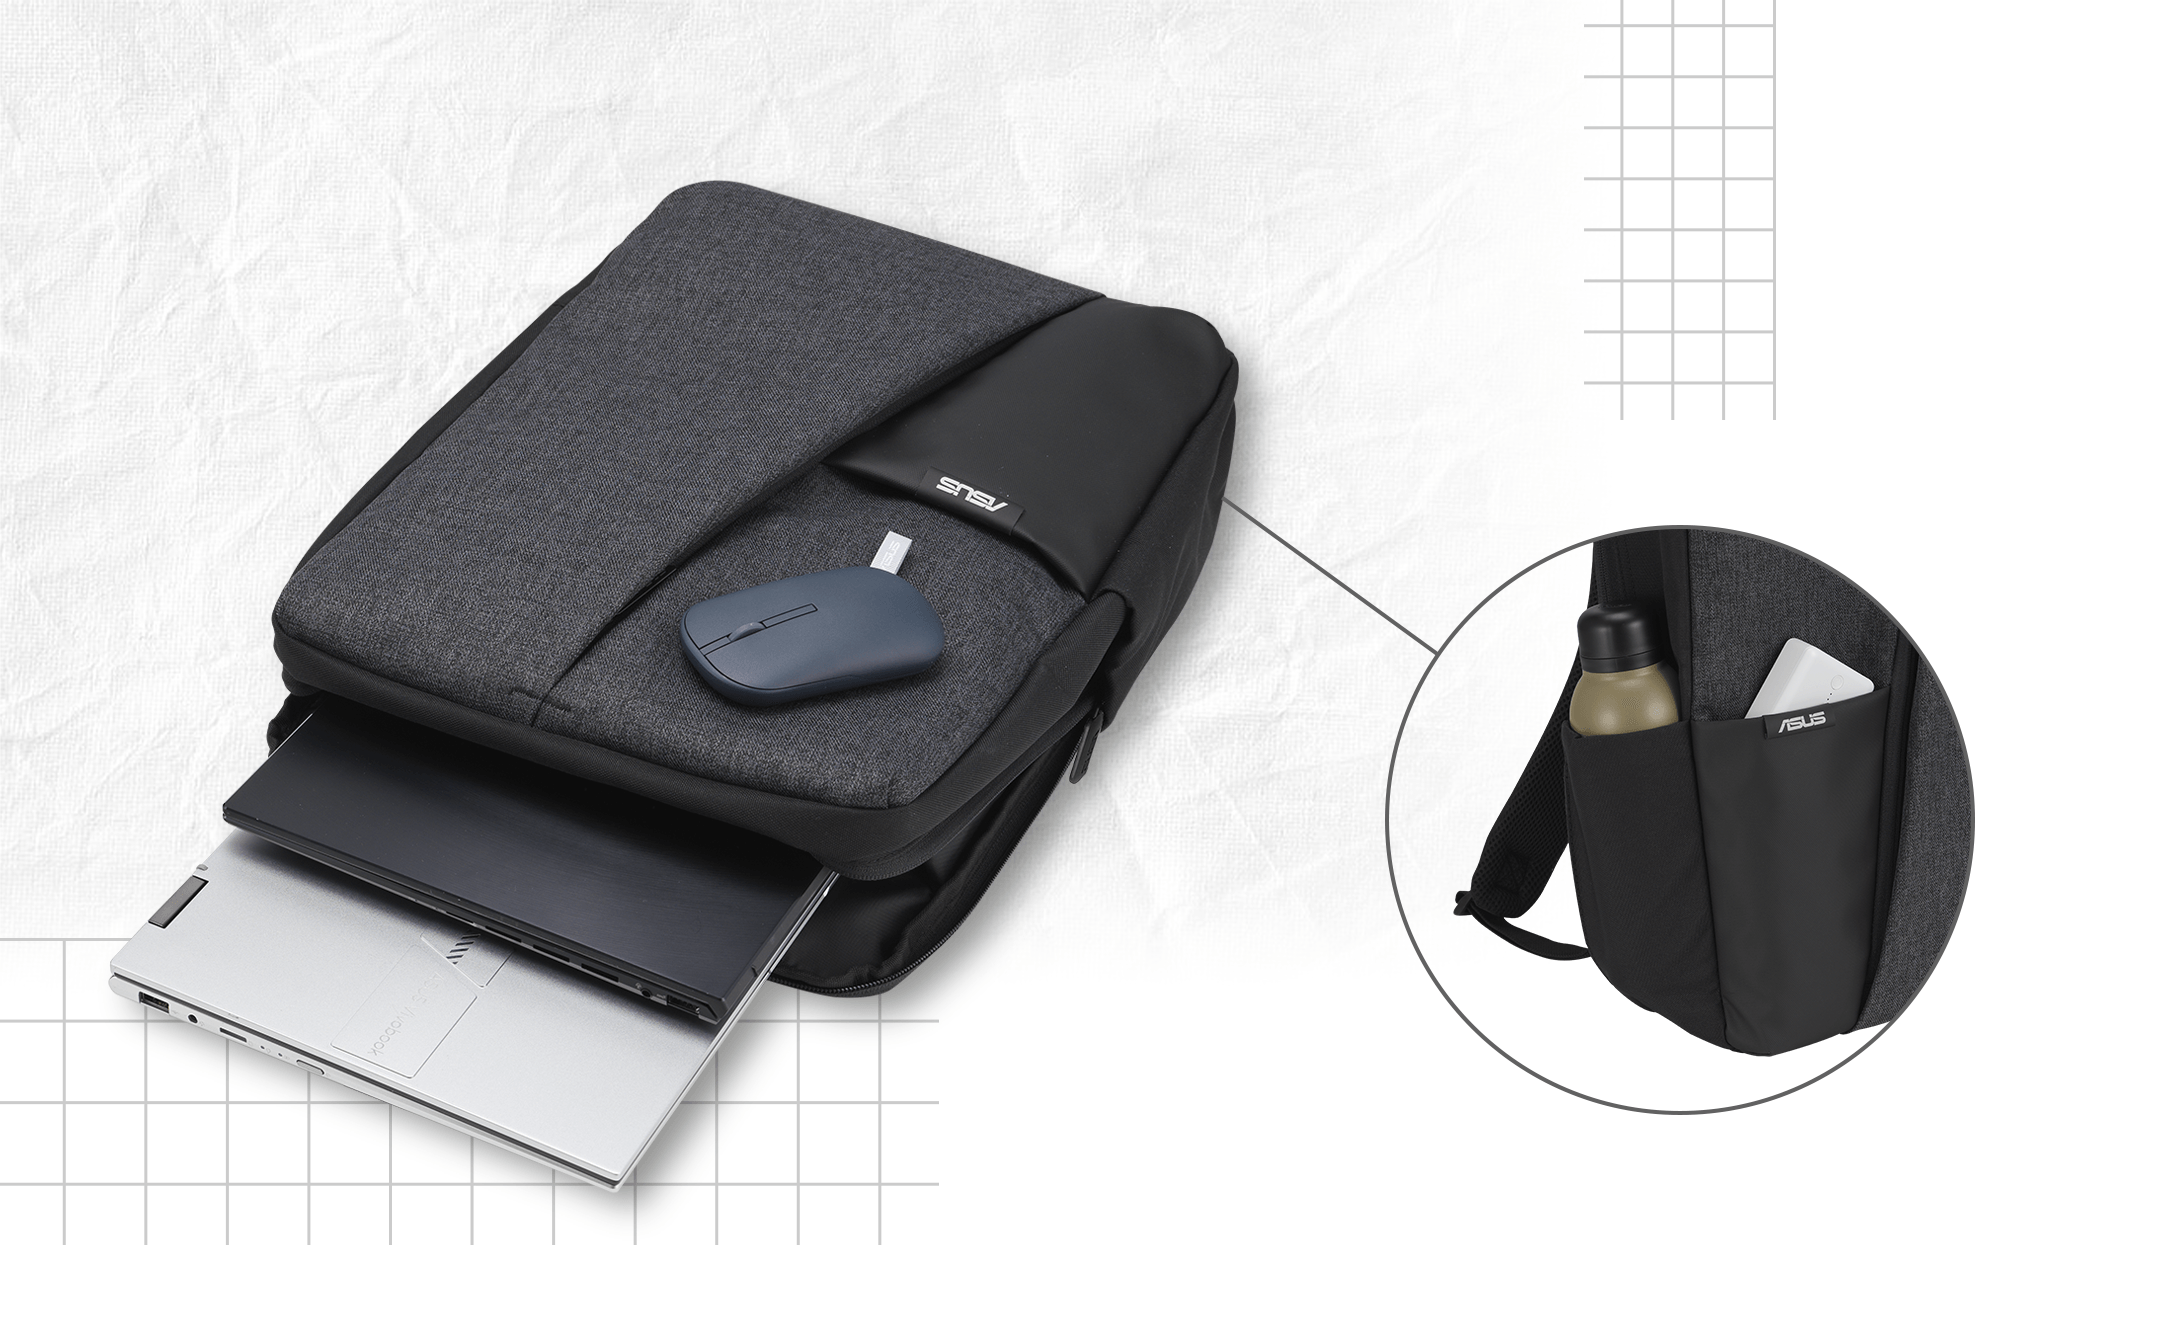 Batoh ASUS AP4600 se dvěma notebooky a myší. Na malých obrázcích je zachycena boční kapsa batohu, do které se vejde láhev s vodou, a přední kapsa, do které se vejde přenosná powerbanka.